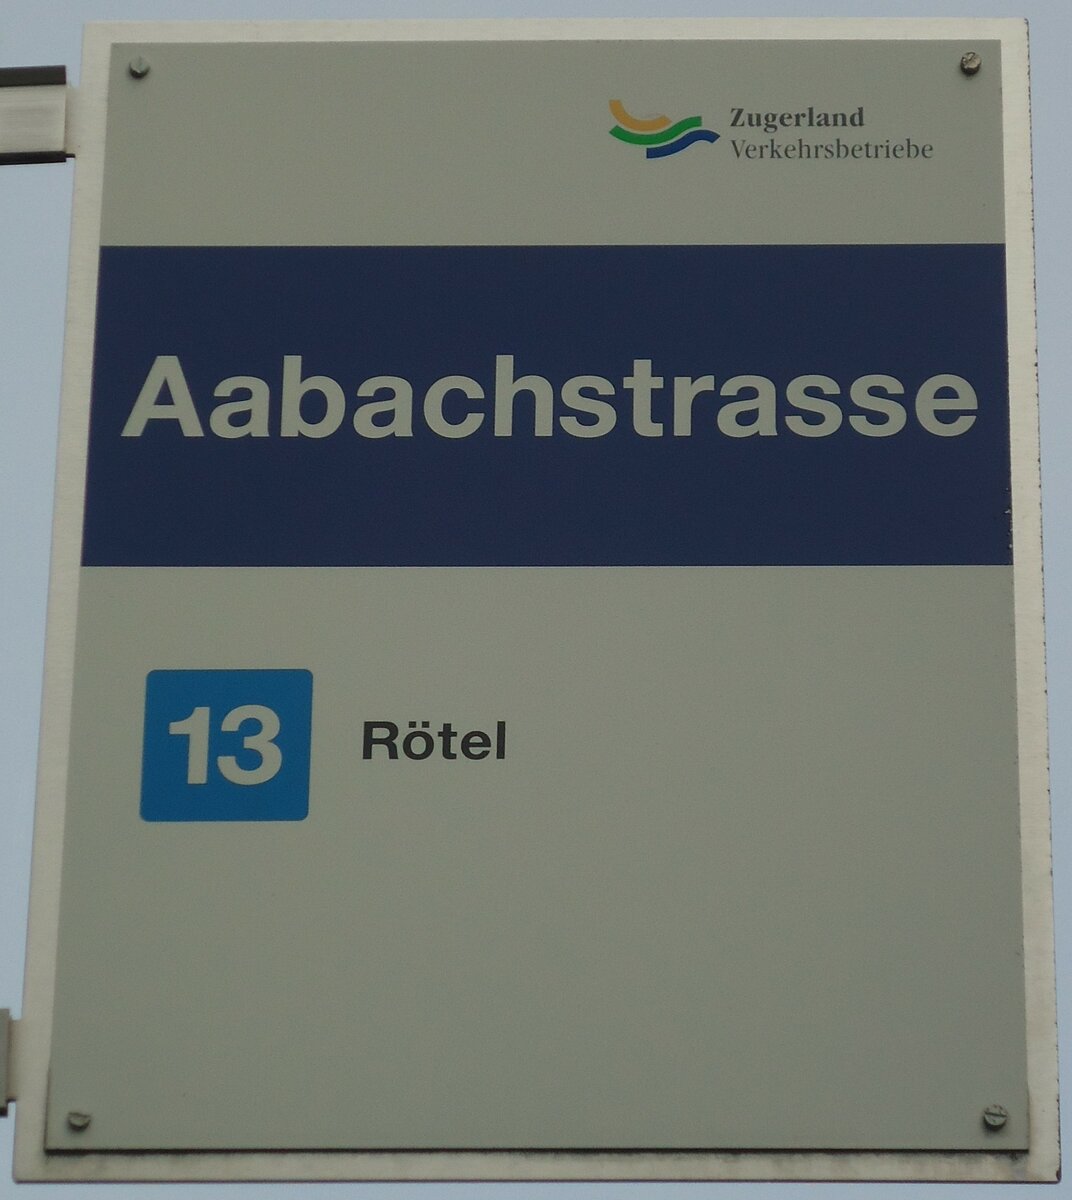 (138'042) - Zugerland Verkehrsbetriebe-Haltestellenschild - Zug, Aabachstrasse - am 6. Mrz 2012